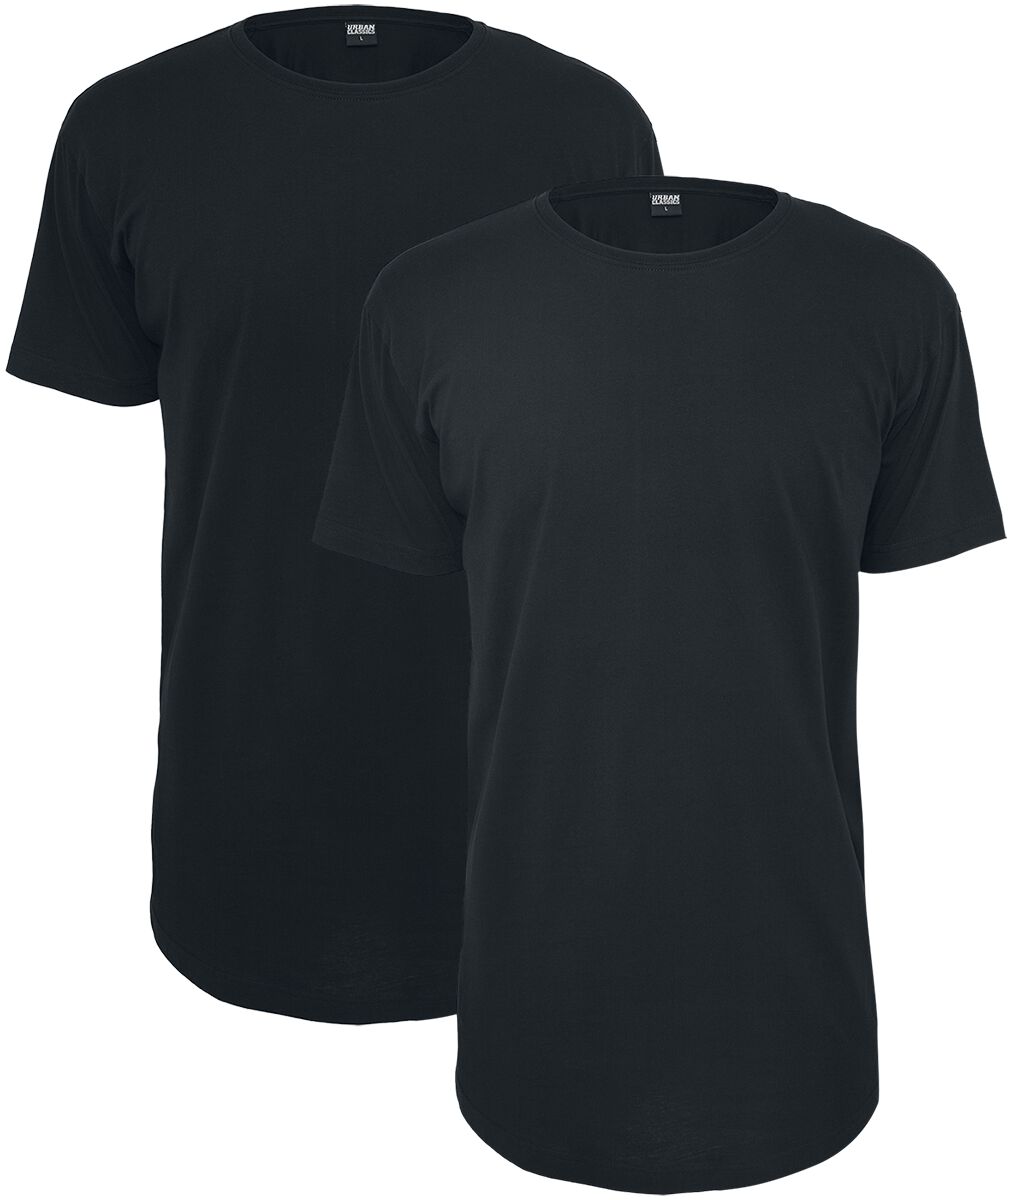 Urban Classics T-Shirt - Pre-Pack Shaped Long Tee 2-Pack - XS bis 5XL - für Männer - Größe M - schwarz